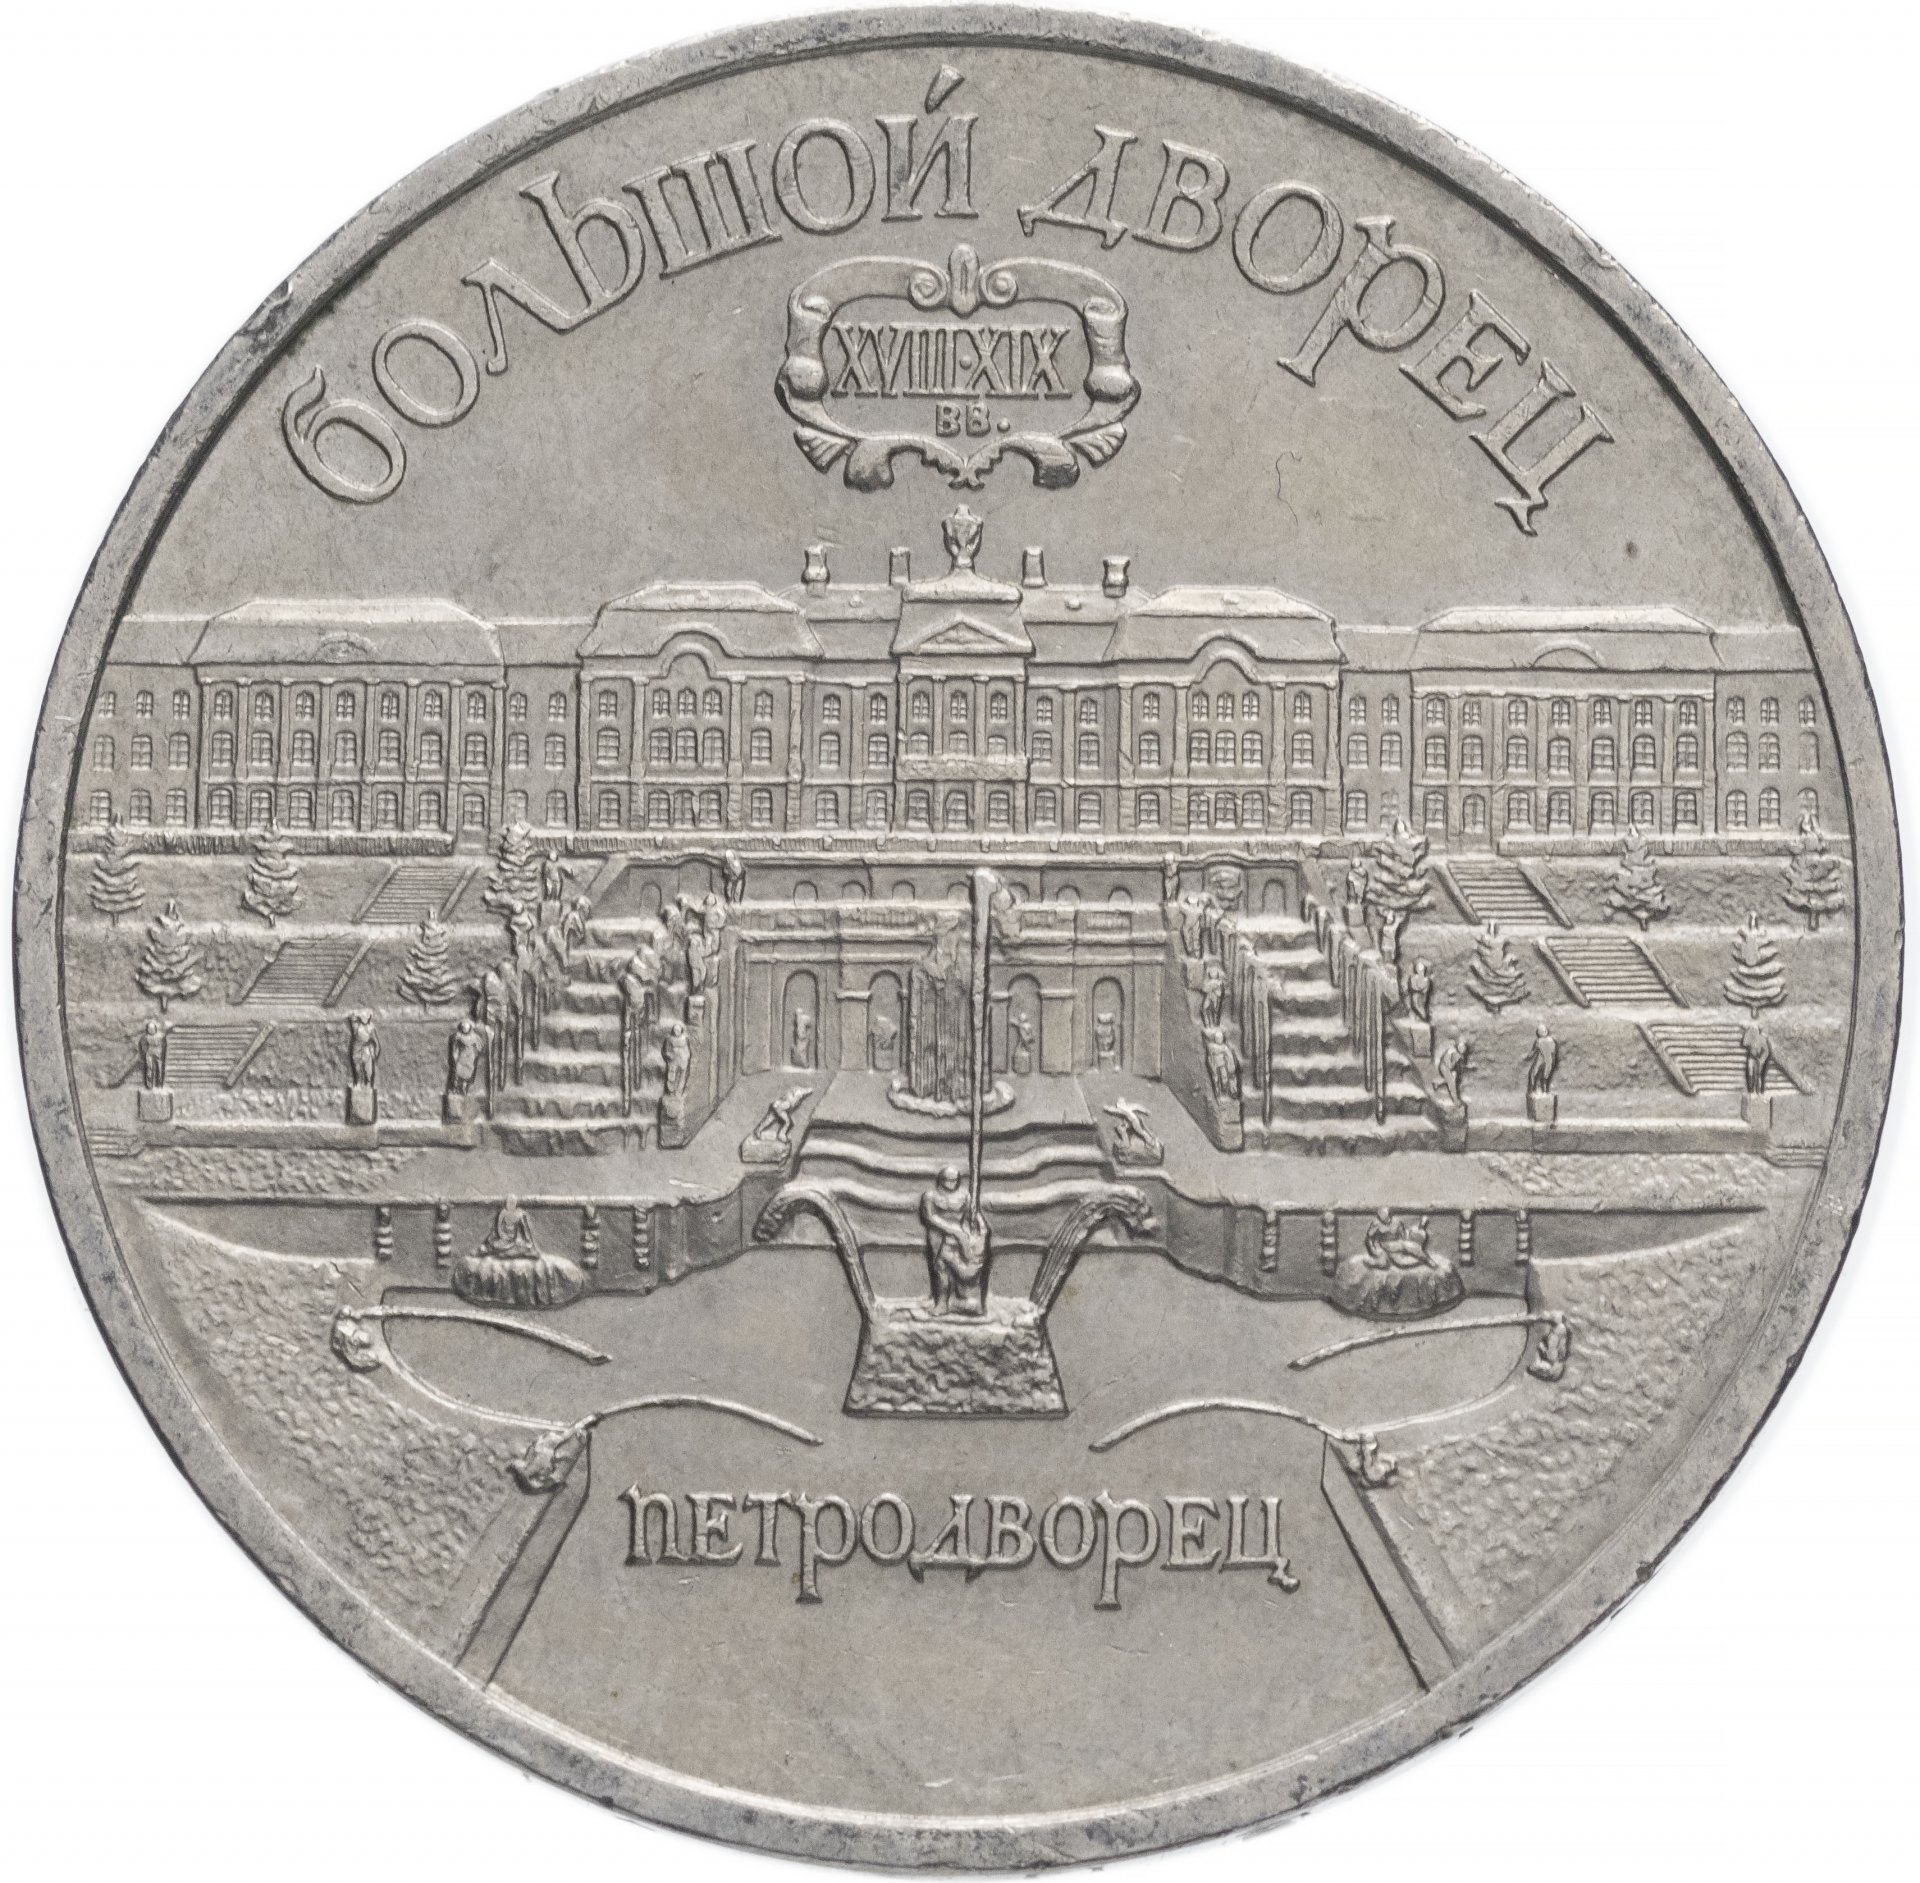 5 рублей - Большой дворец